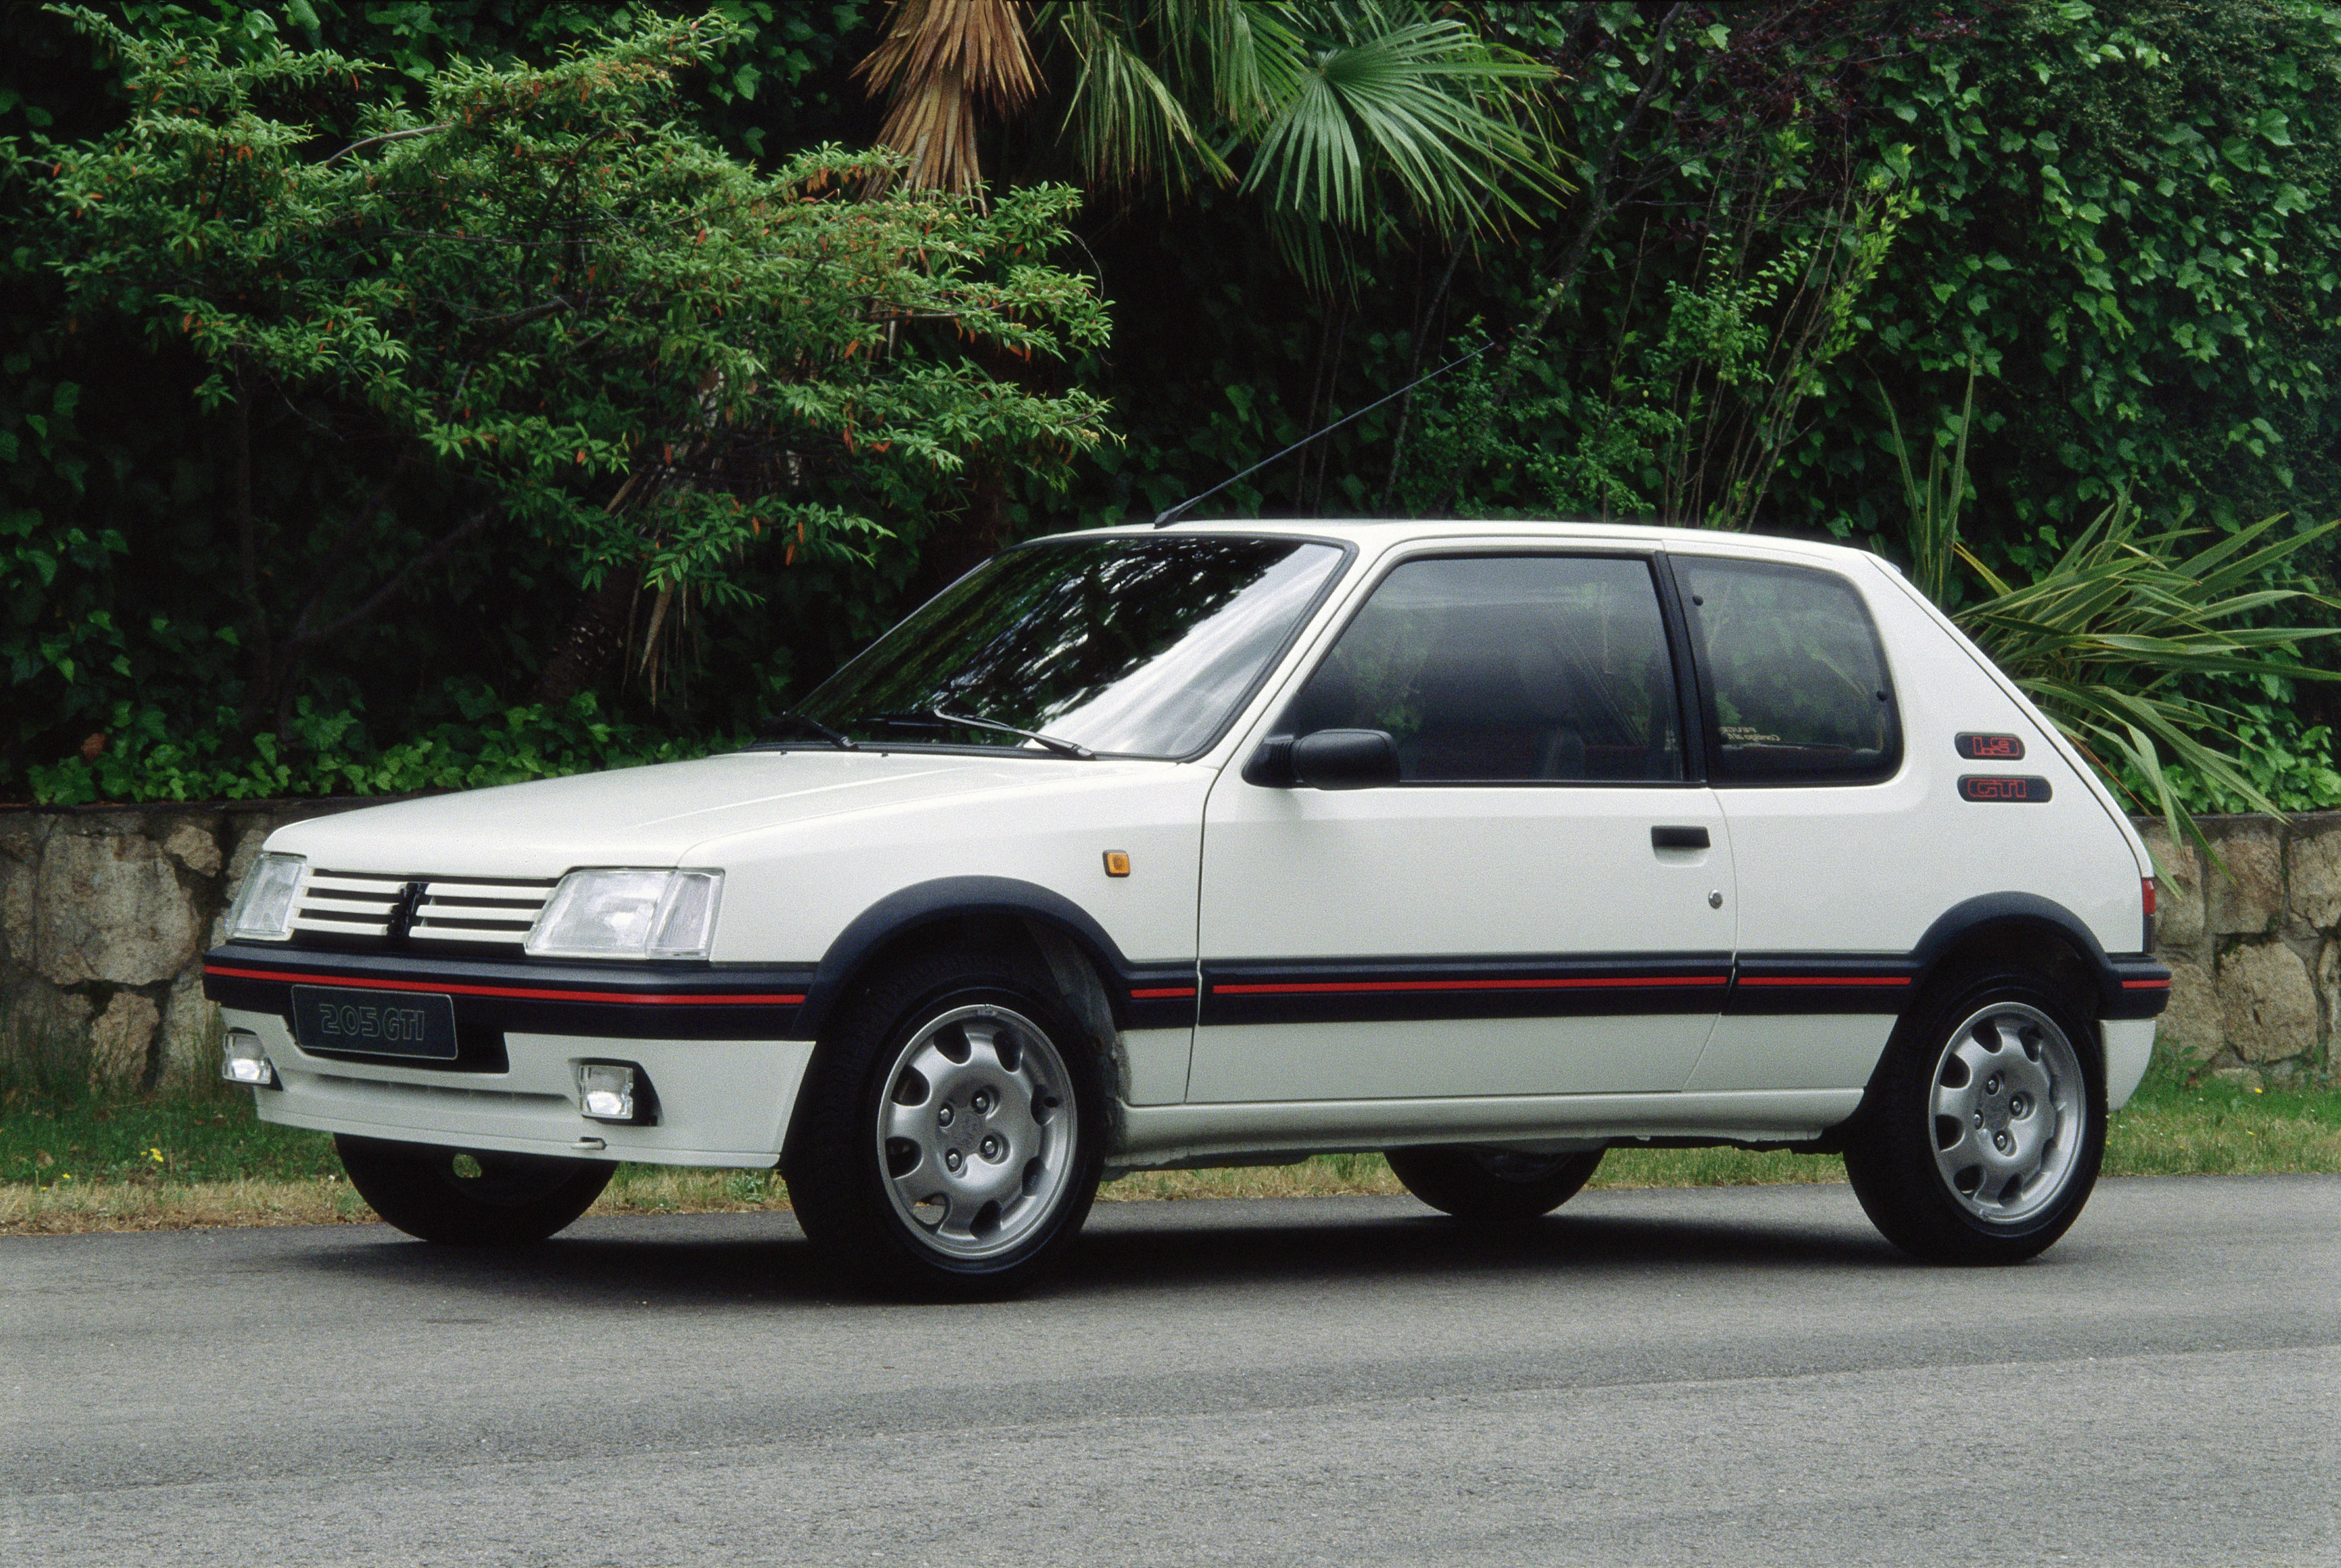 Peugeot comemora 210 anos com 13 vídeos inéditos em Outubro